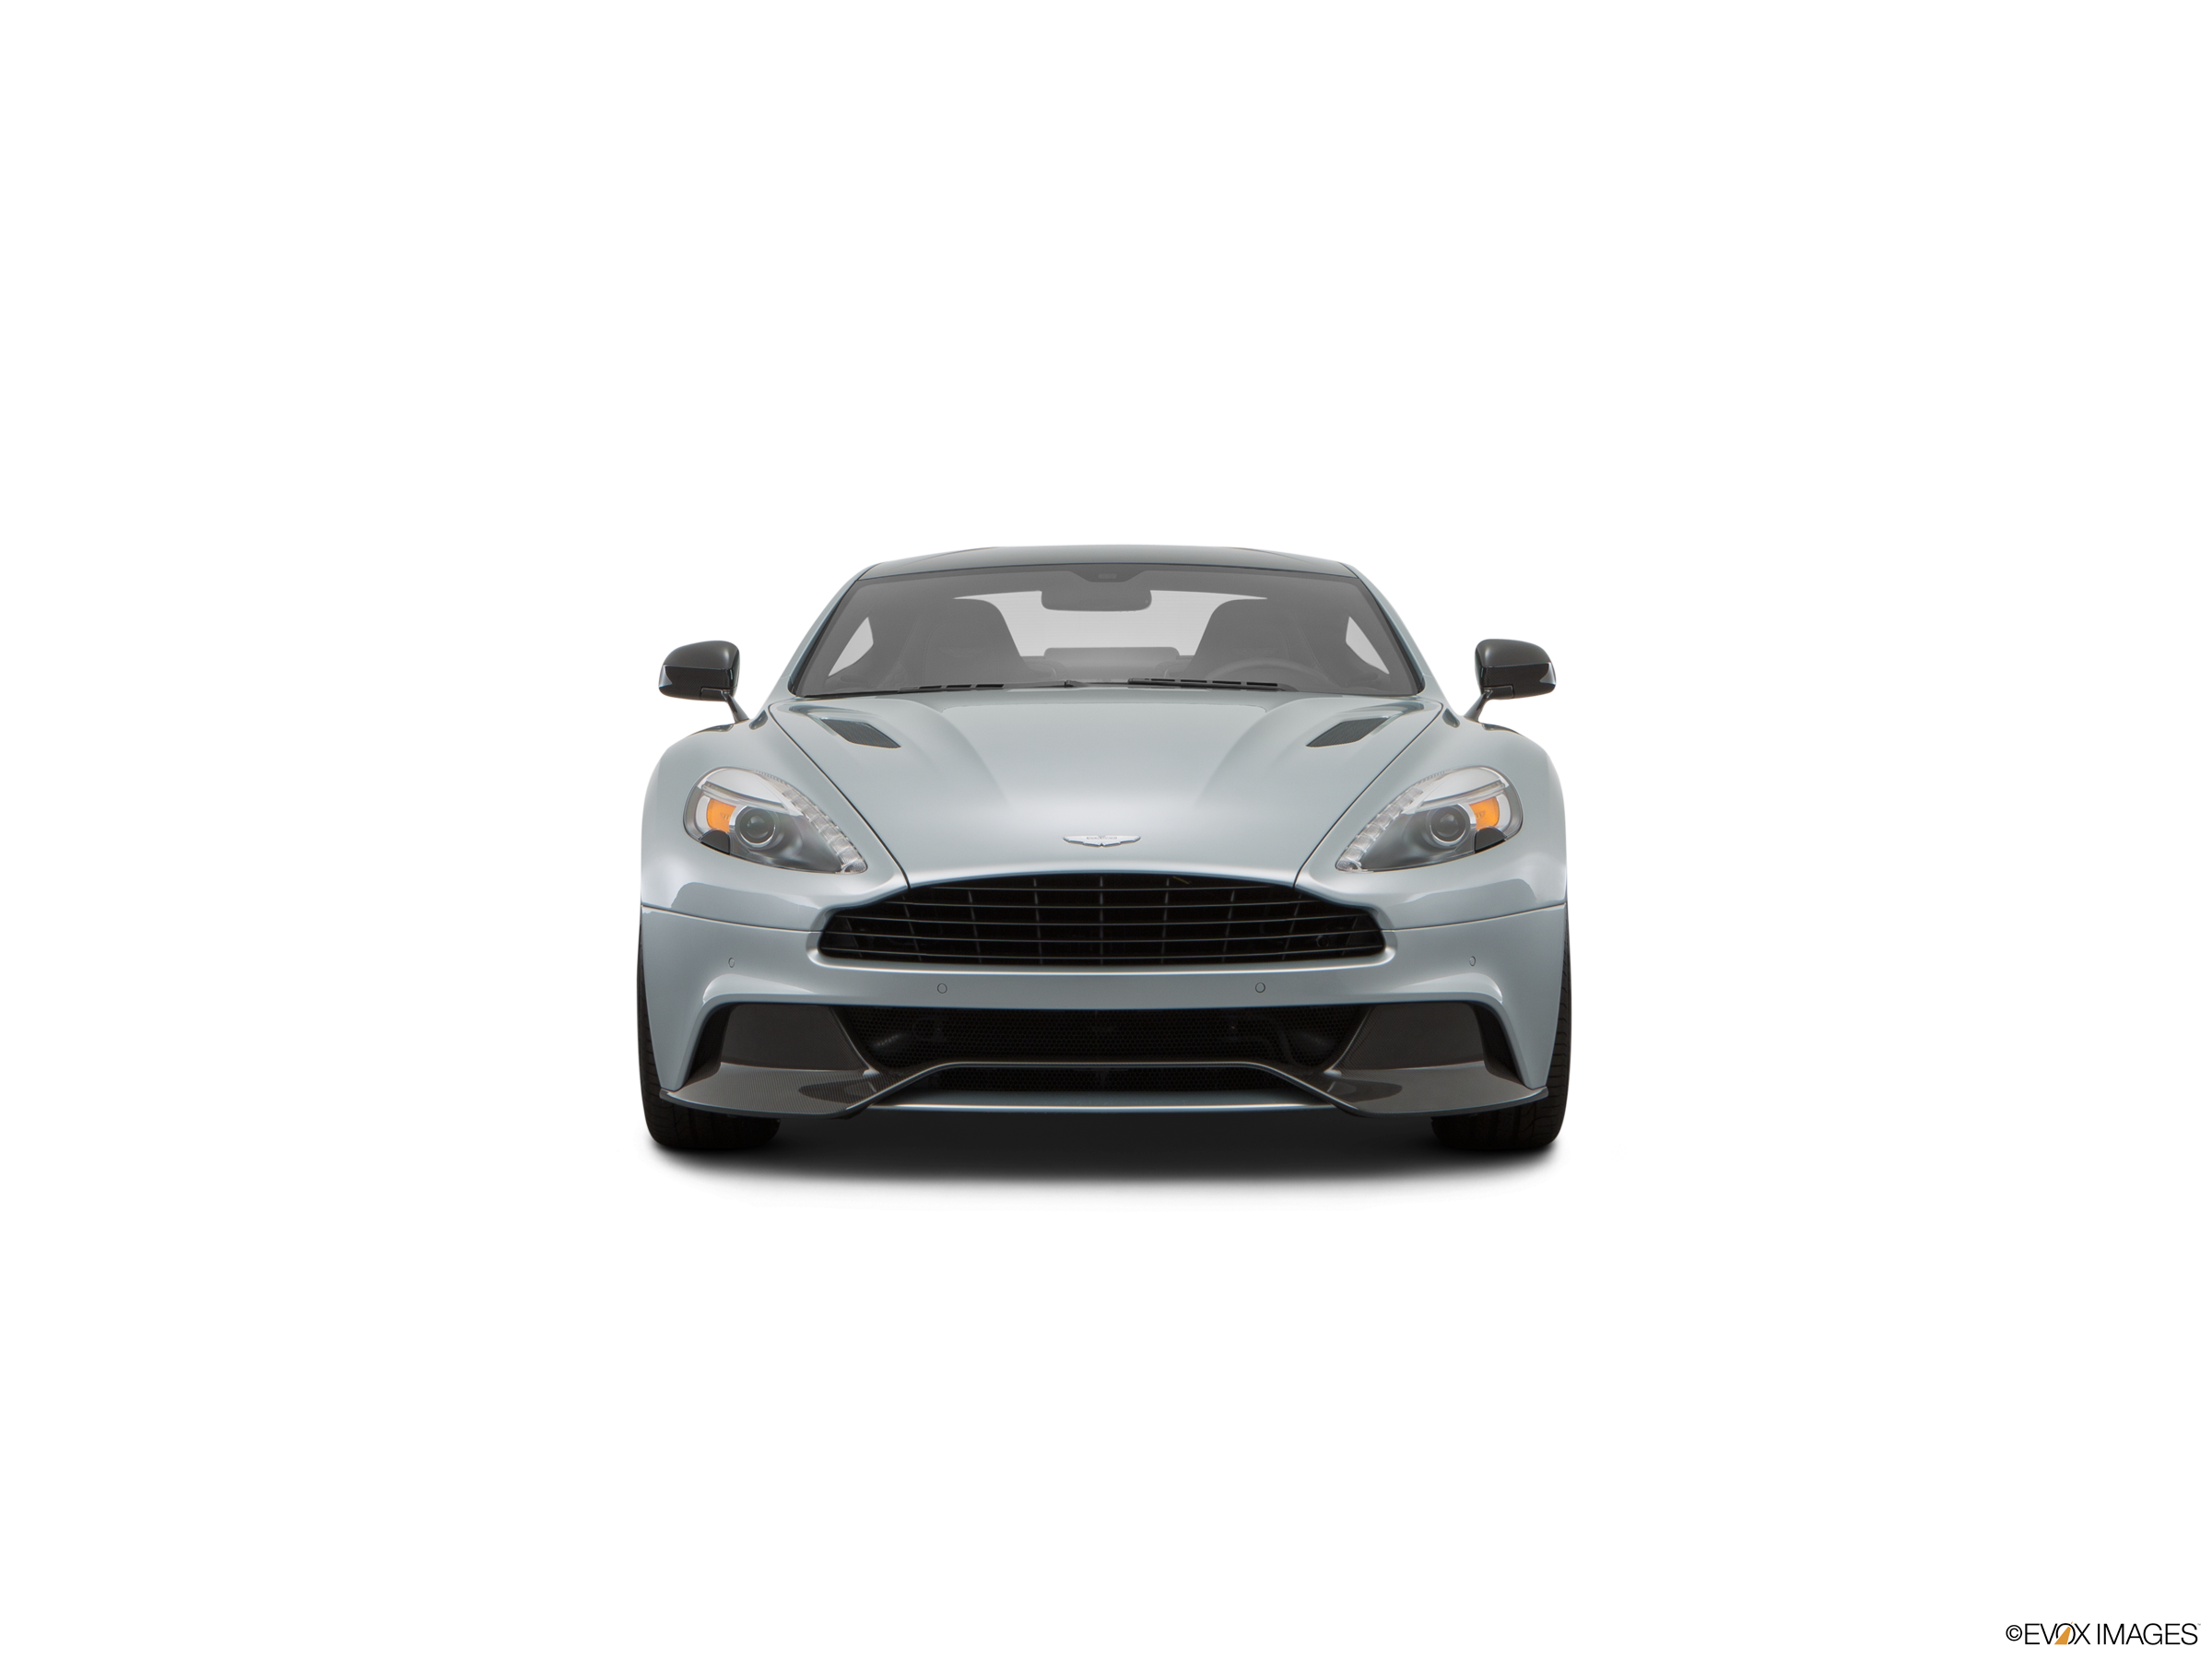 Aston Martin Vanquish 2018 PNG HD Quality